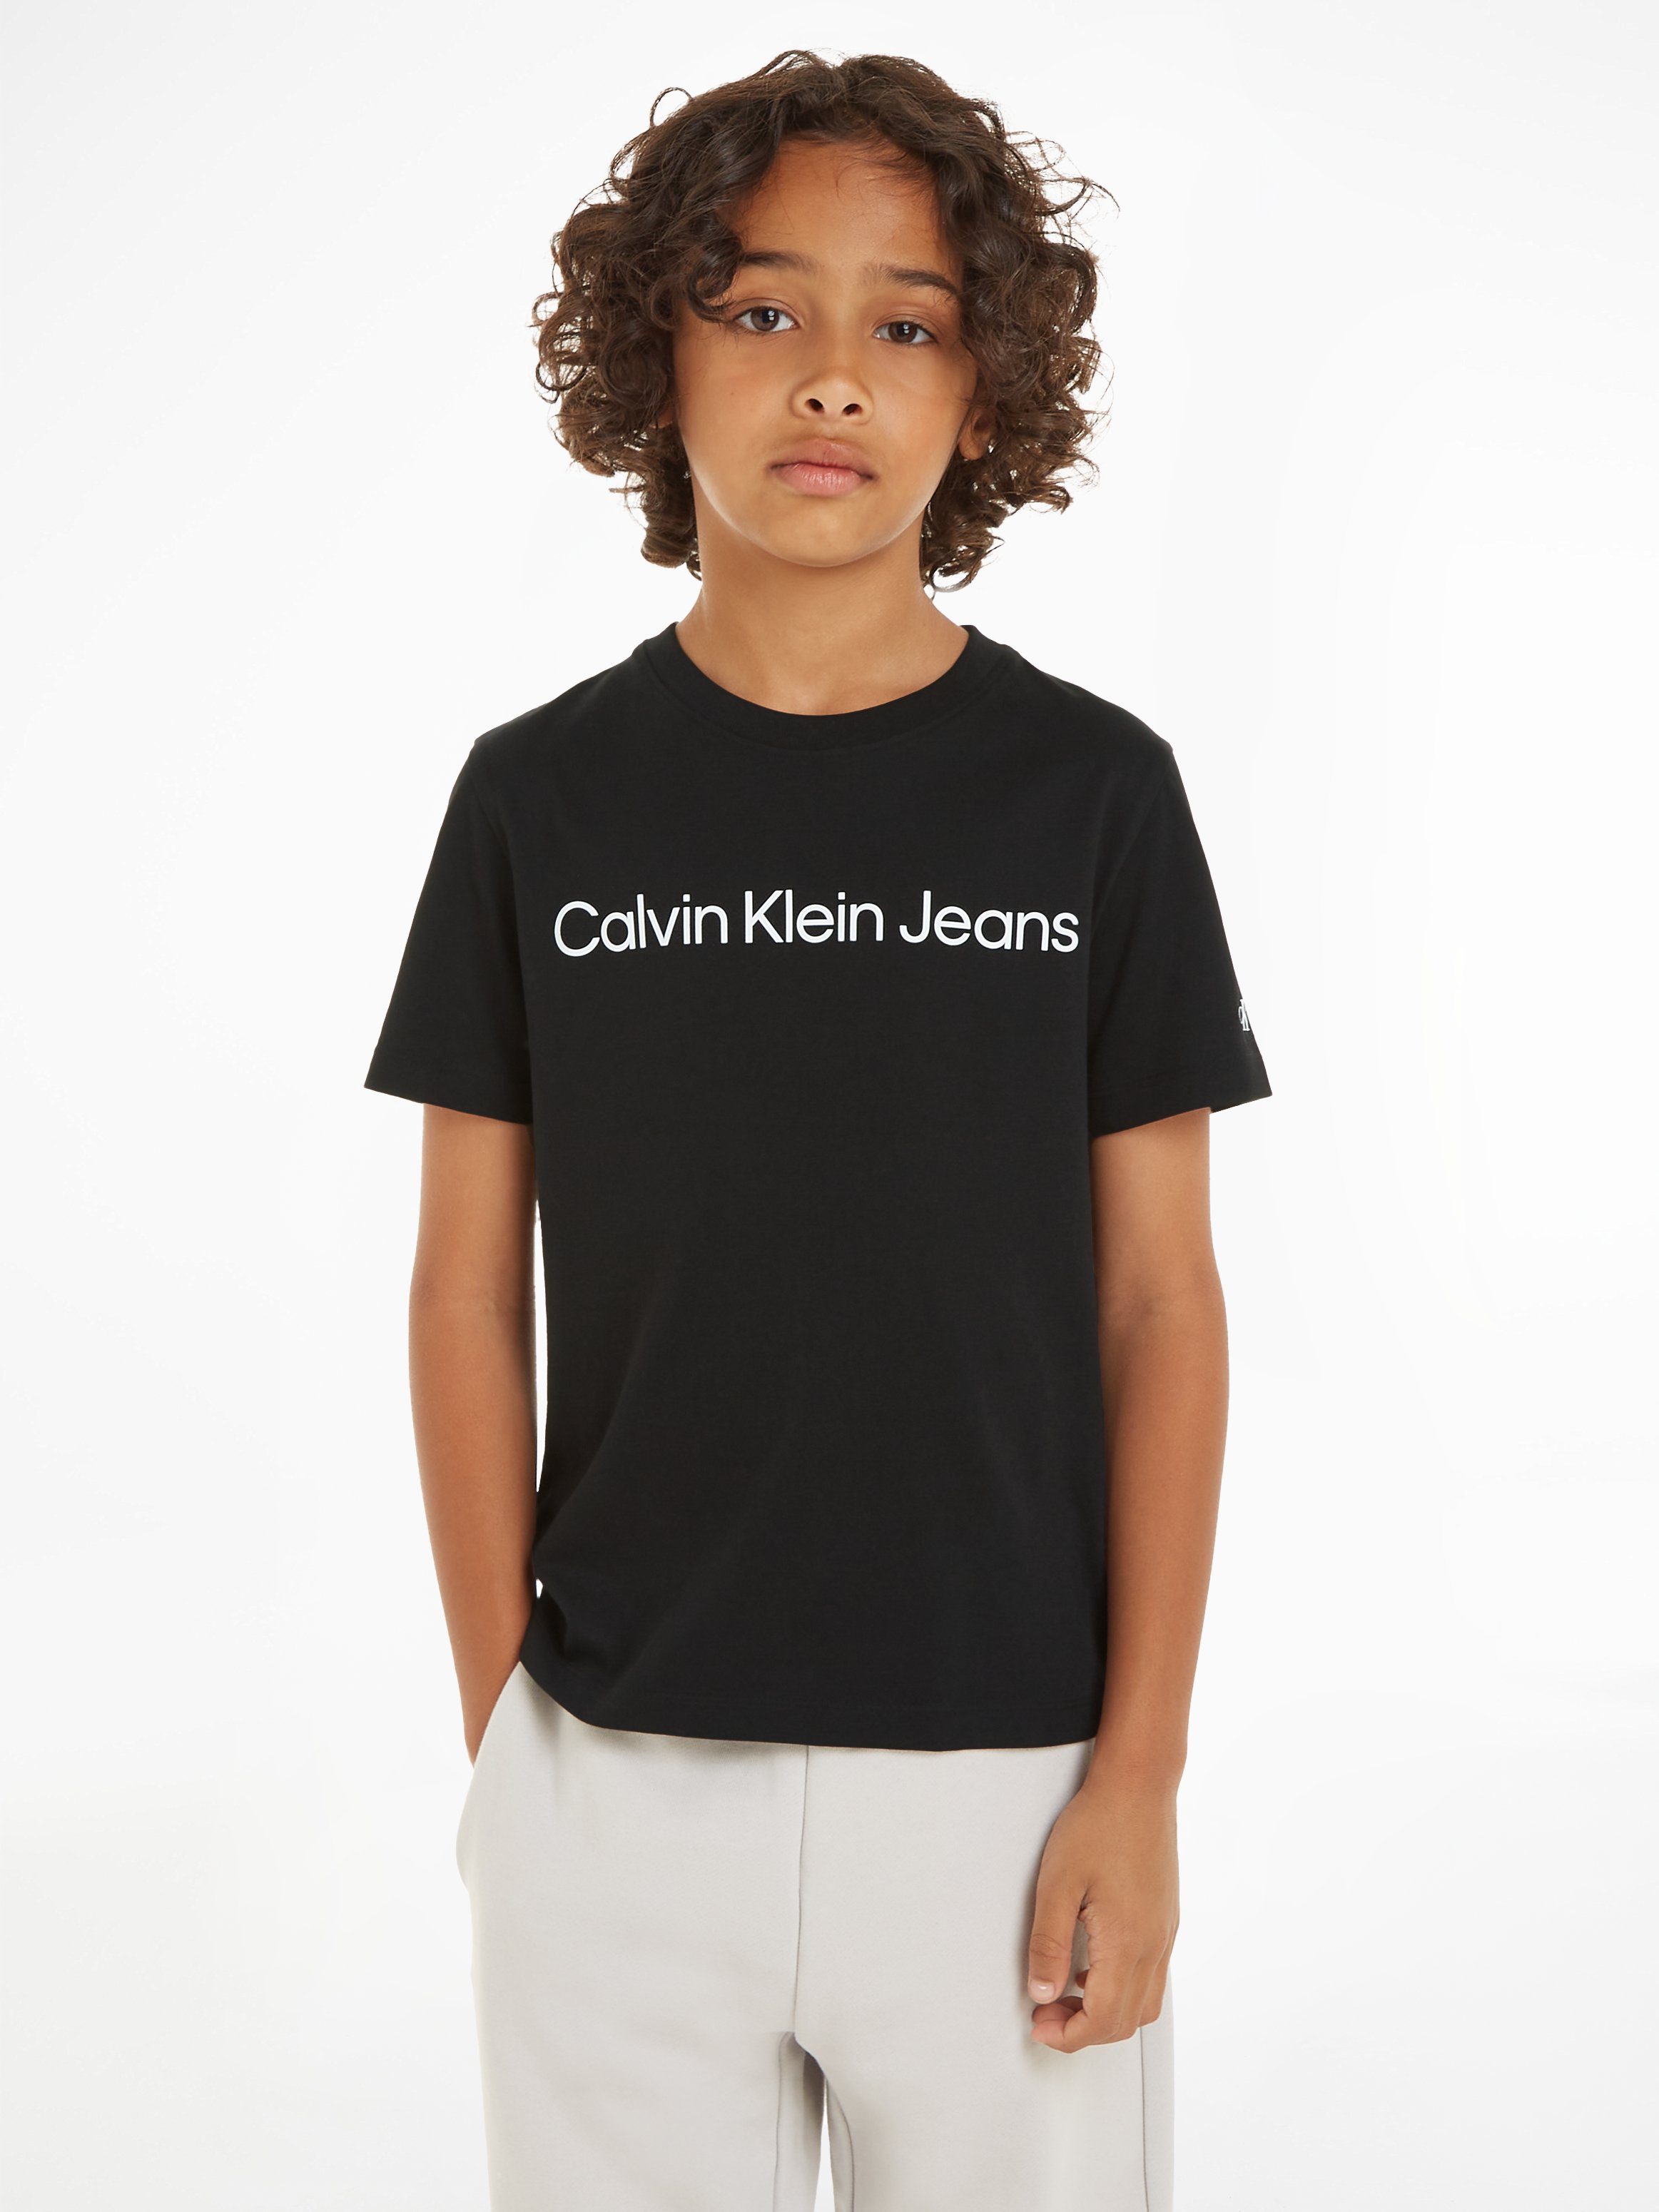 Calvin Klein Jeans LOGO Kinder T-SHIRT 16 Jahre SS für INST. bis Sweatshirt